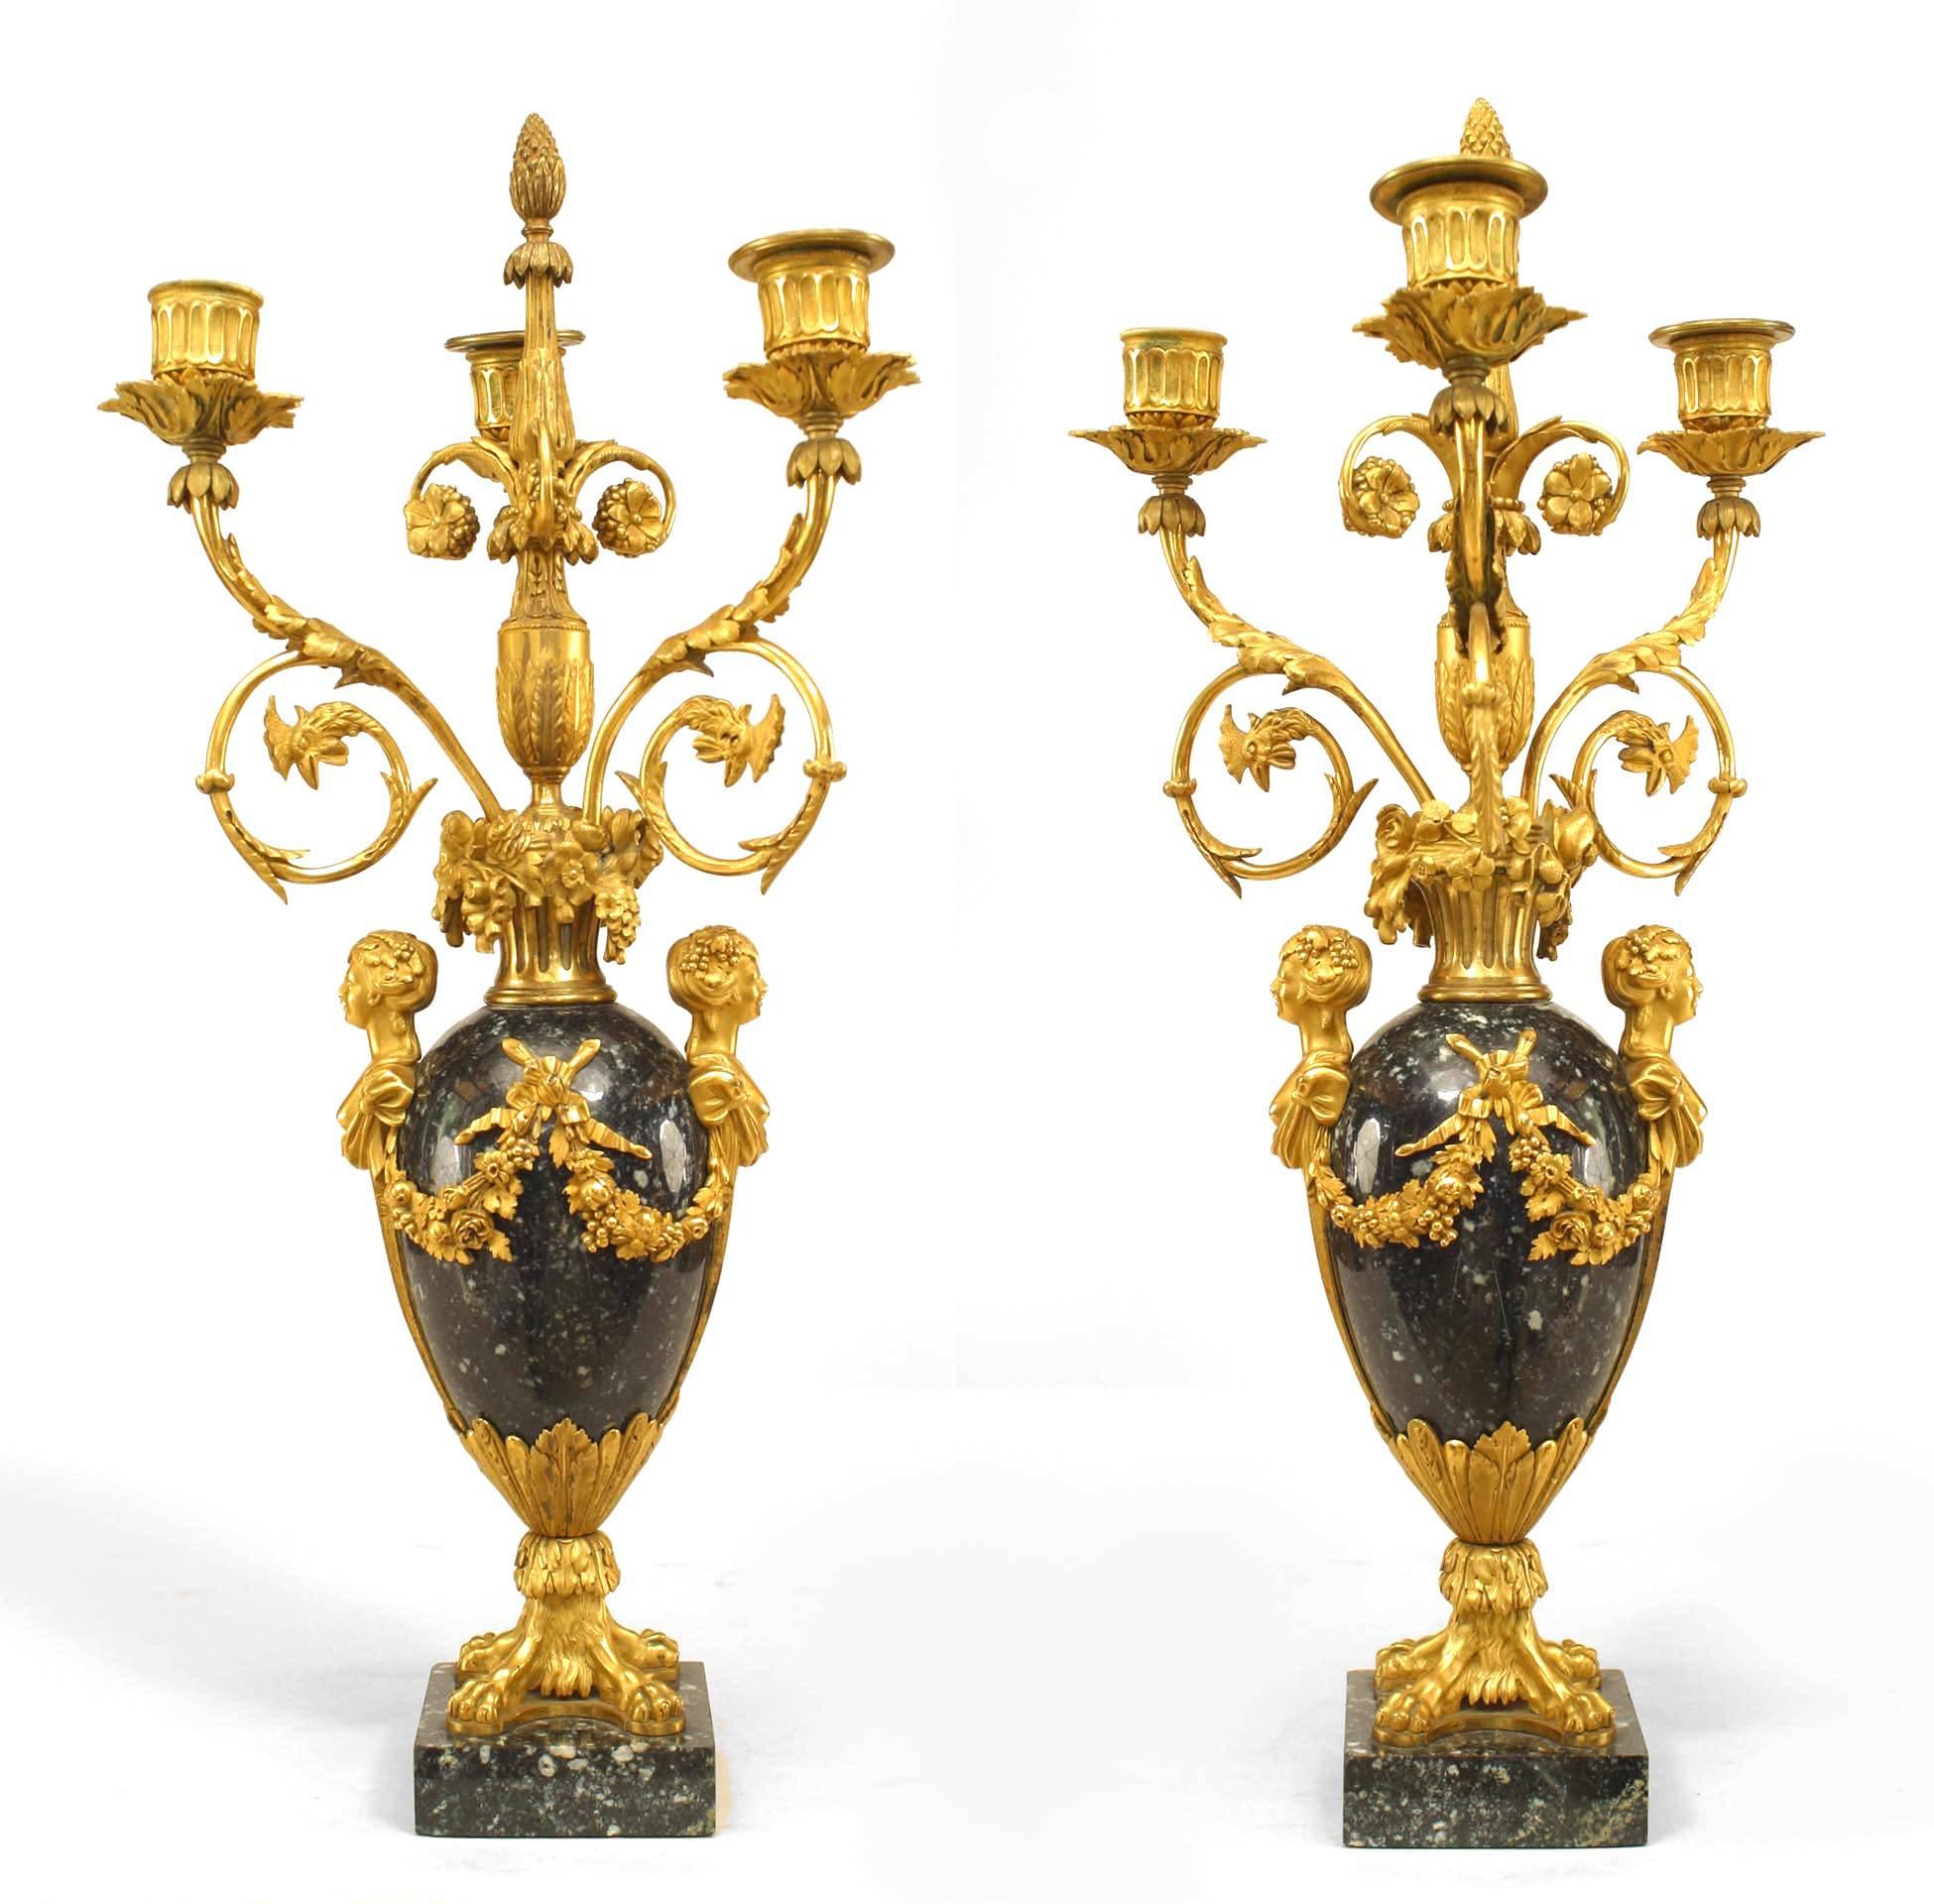 Paar französischer viktorianischer (19. Jahrhundert) 3-Licht-Kandelaber aus schwarzem Marmor und vergoldeter Bronze mit aufwändigem Blumen- und Swag-Design und Löwentatzen-Details (signiert: HENRY DASSON 1879) (PREIS PRO PÄRCHEN)
